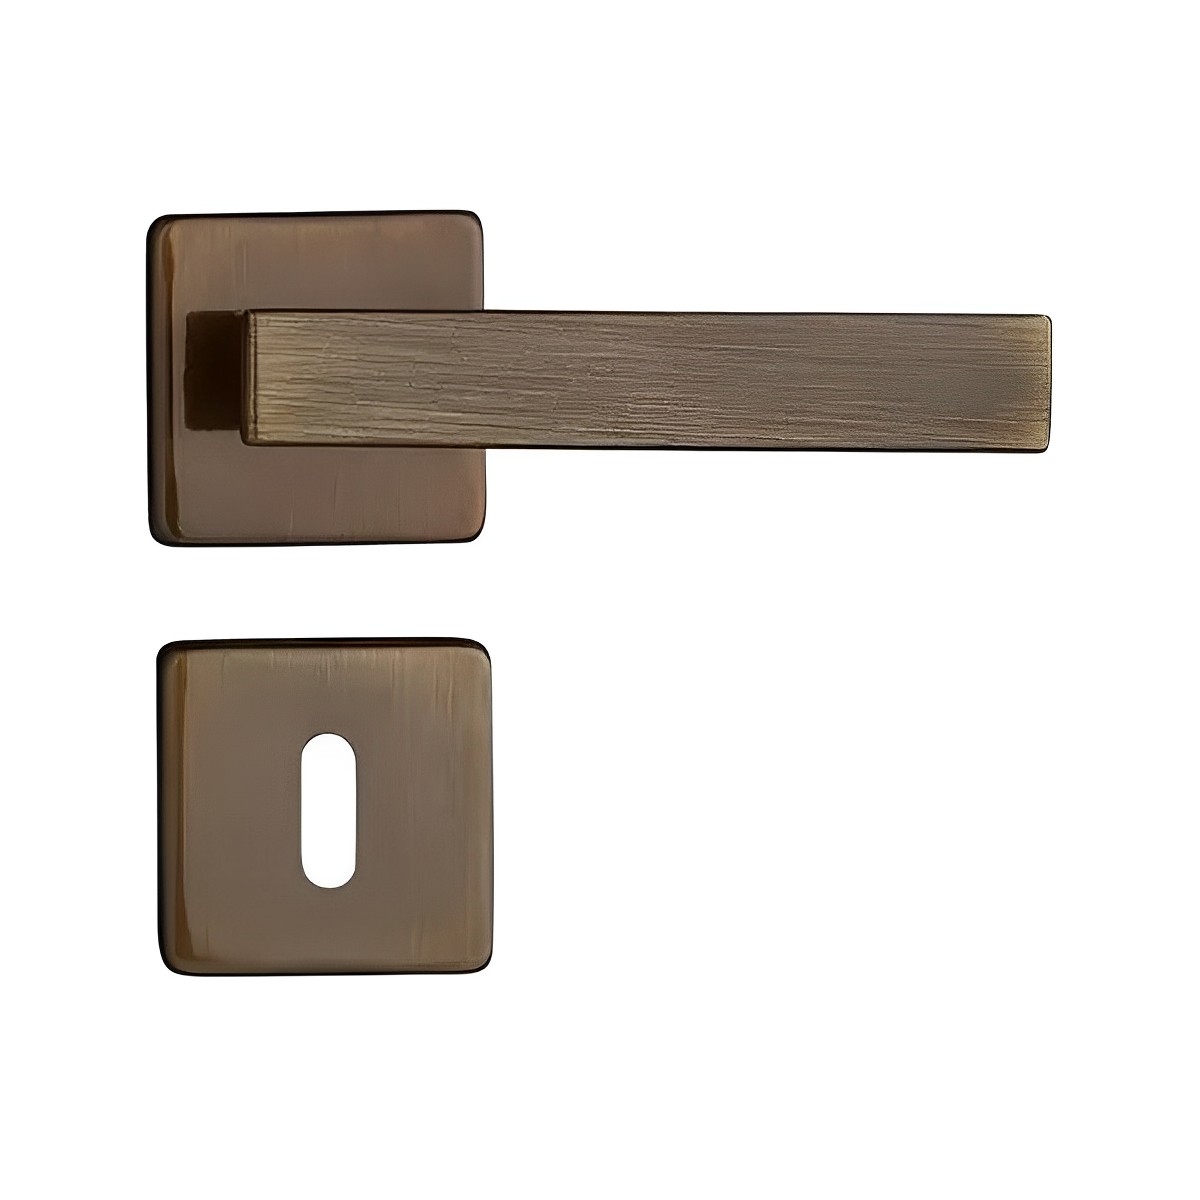 Fechadura Interna Concept Quadrada 409 Bronze Oxidado - Pado